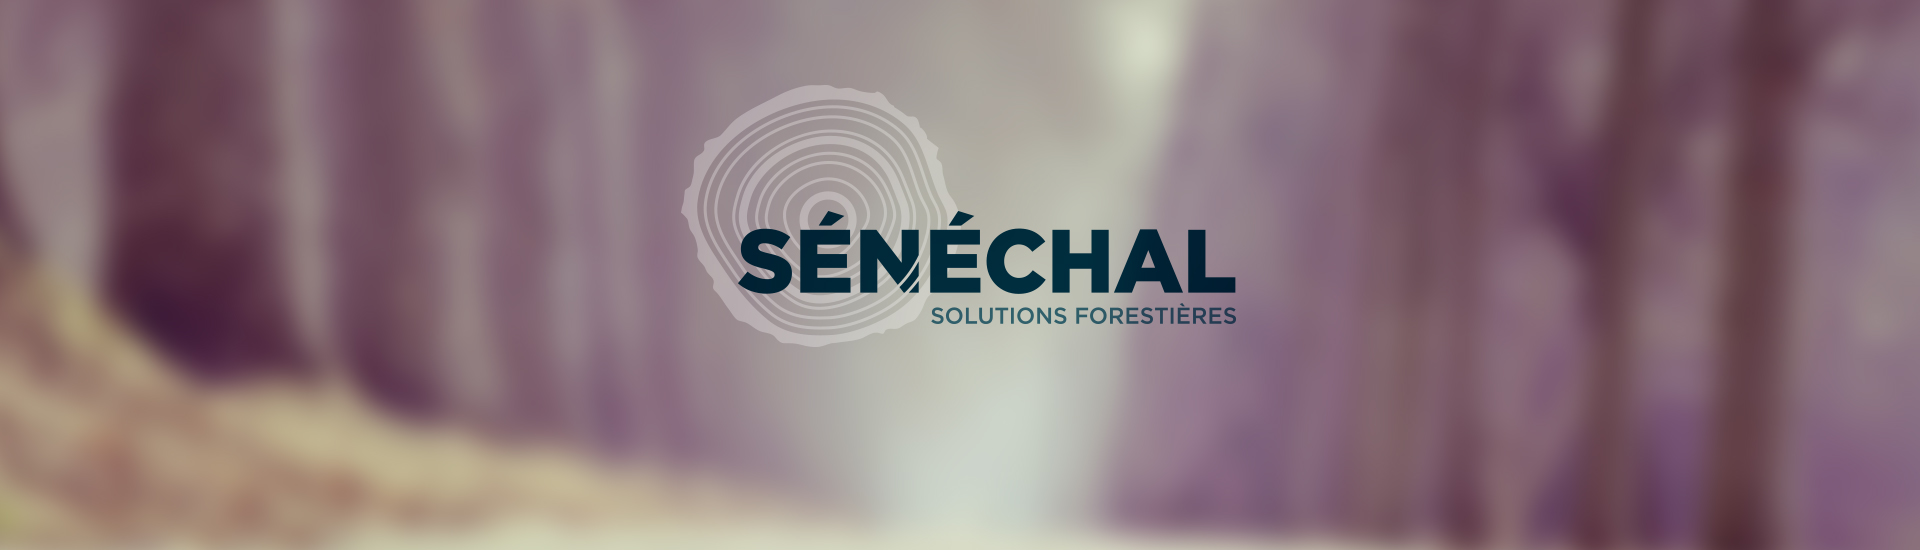 Sénéchal Solutions Forestières image de marque